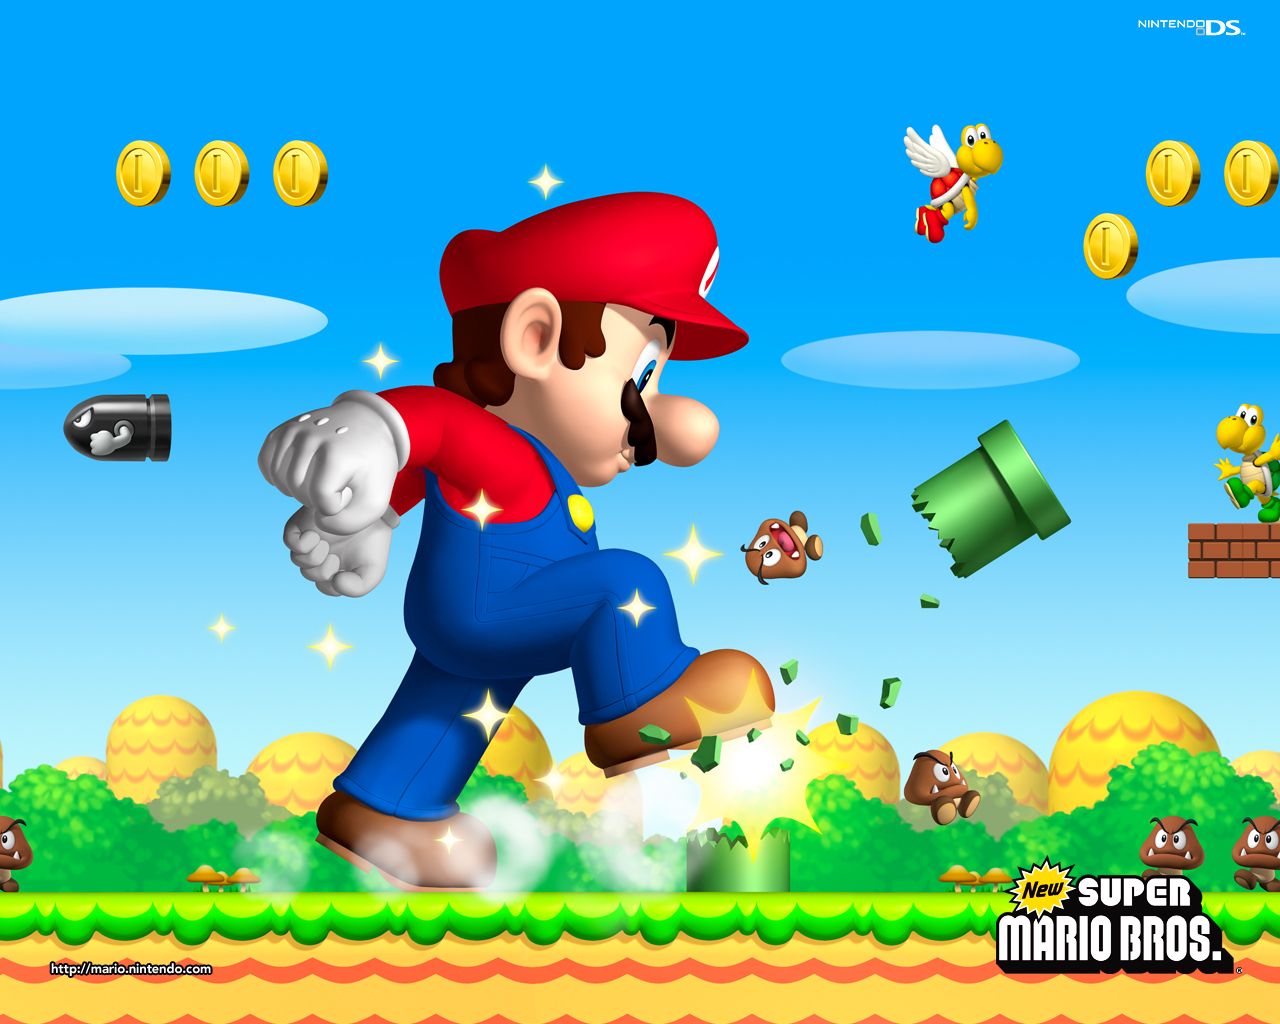 New Super Mario Brothers Wallpaper - Super Mario Bros. Wallpaper ...